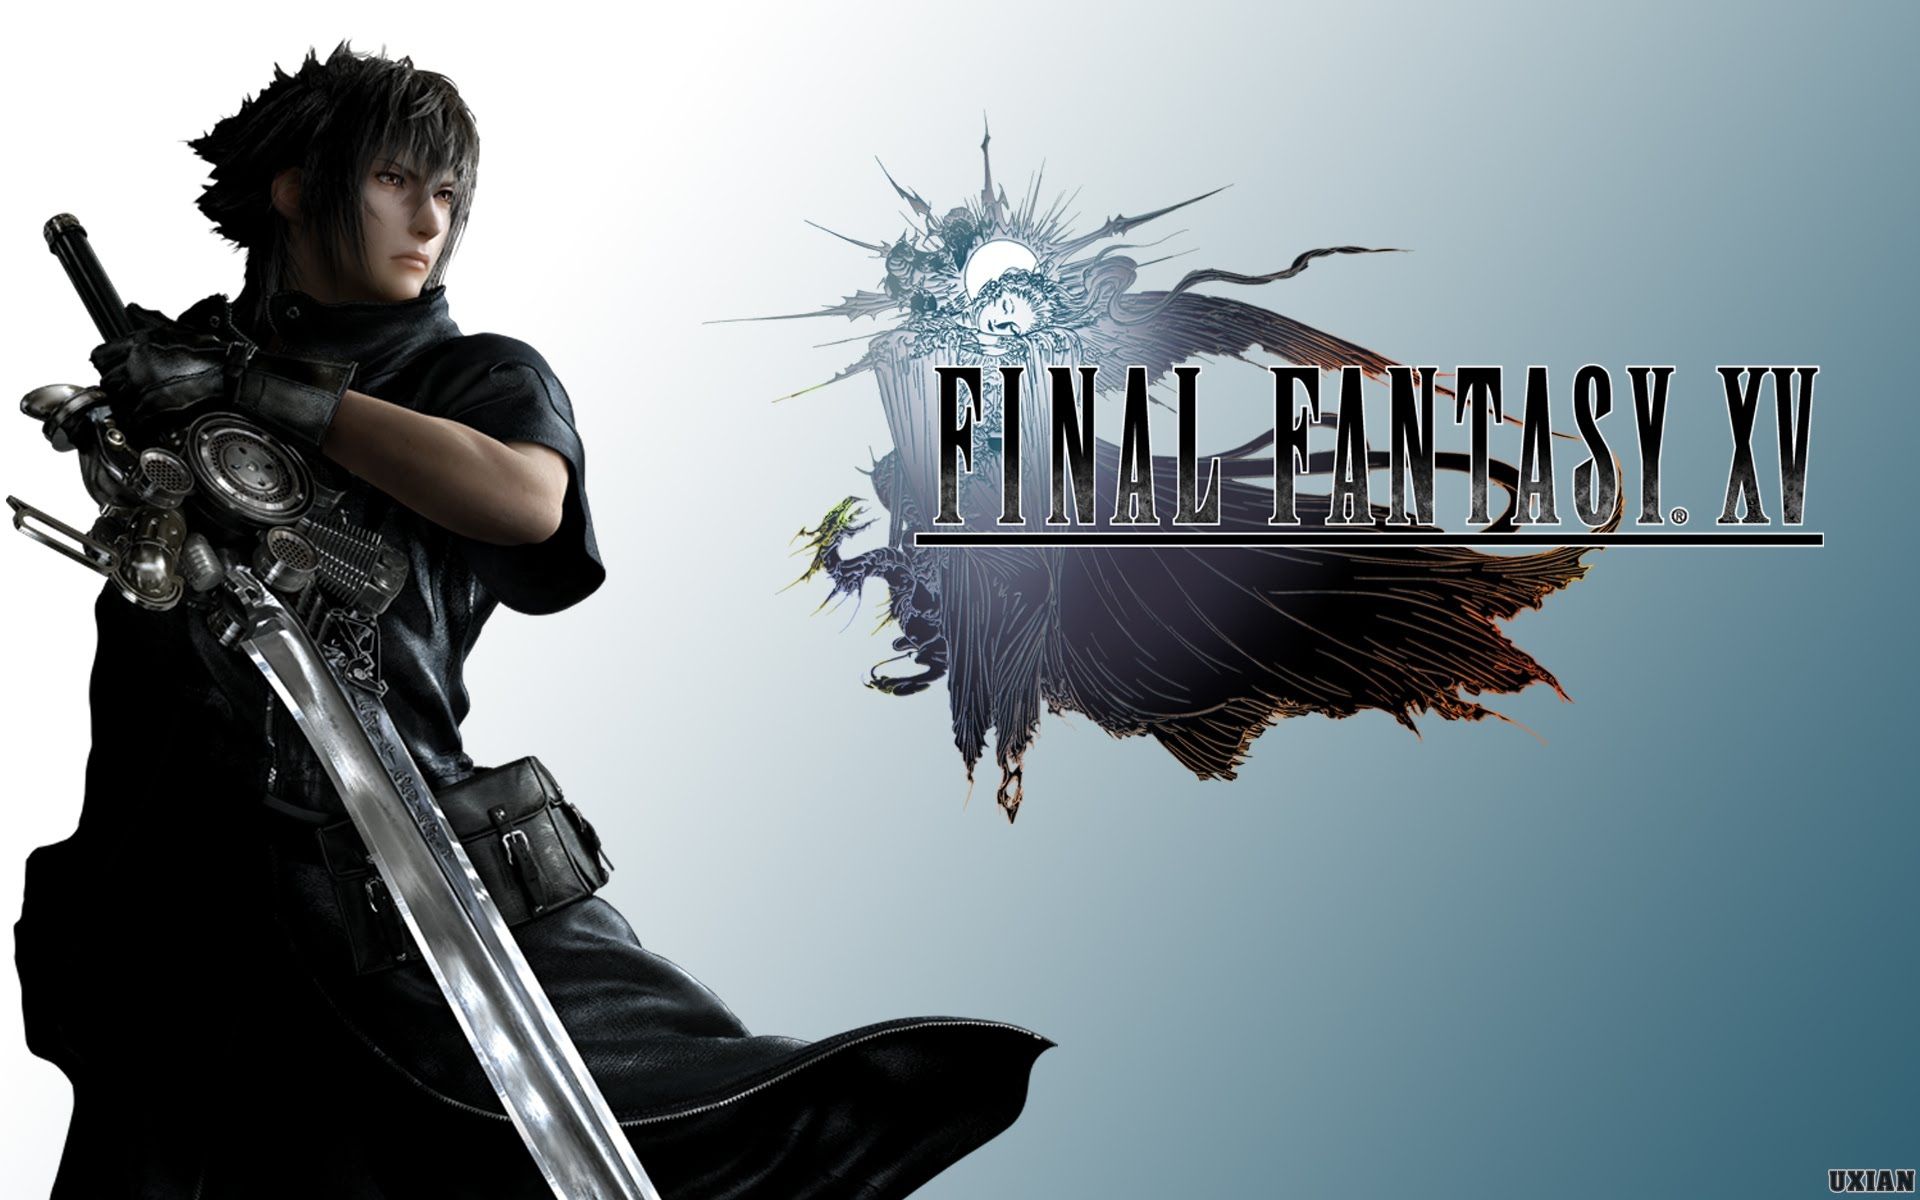 Svelati tre nuovi brani della tracklist di Final Fantasy XV